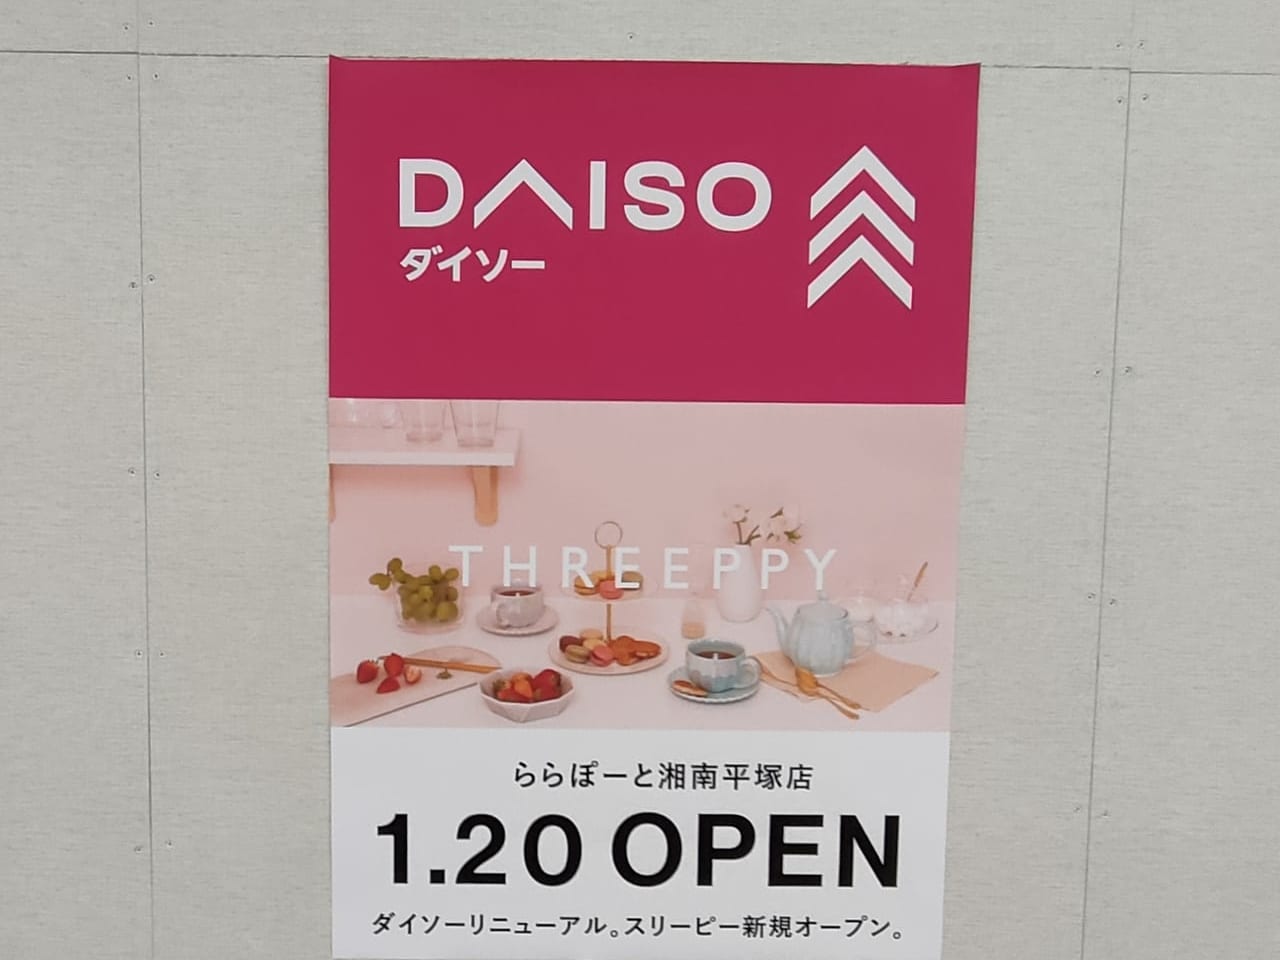 ららぽーと湘南平塚の「ザ・ダイソー 」が、2023年1月9日（月）に営業終了。1月20日（金）、「DAISO・THREEPPY」としてリニューアルオープンします！